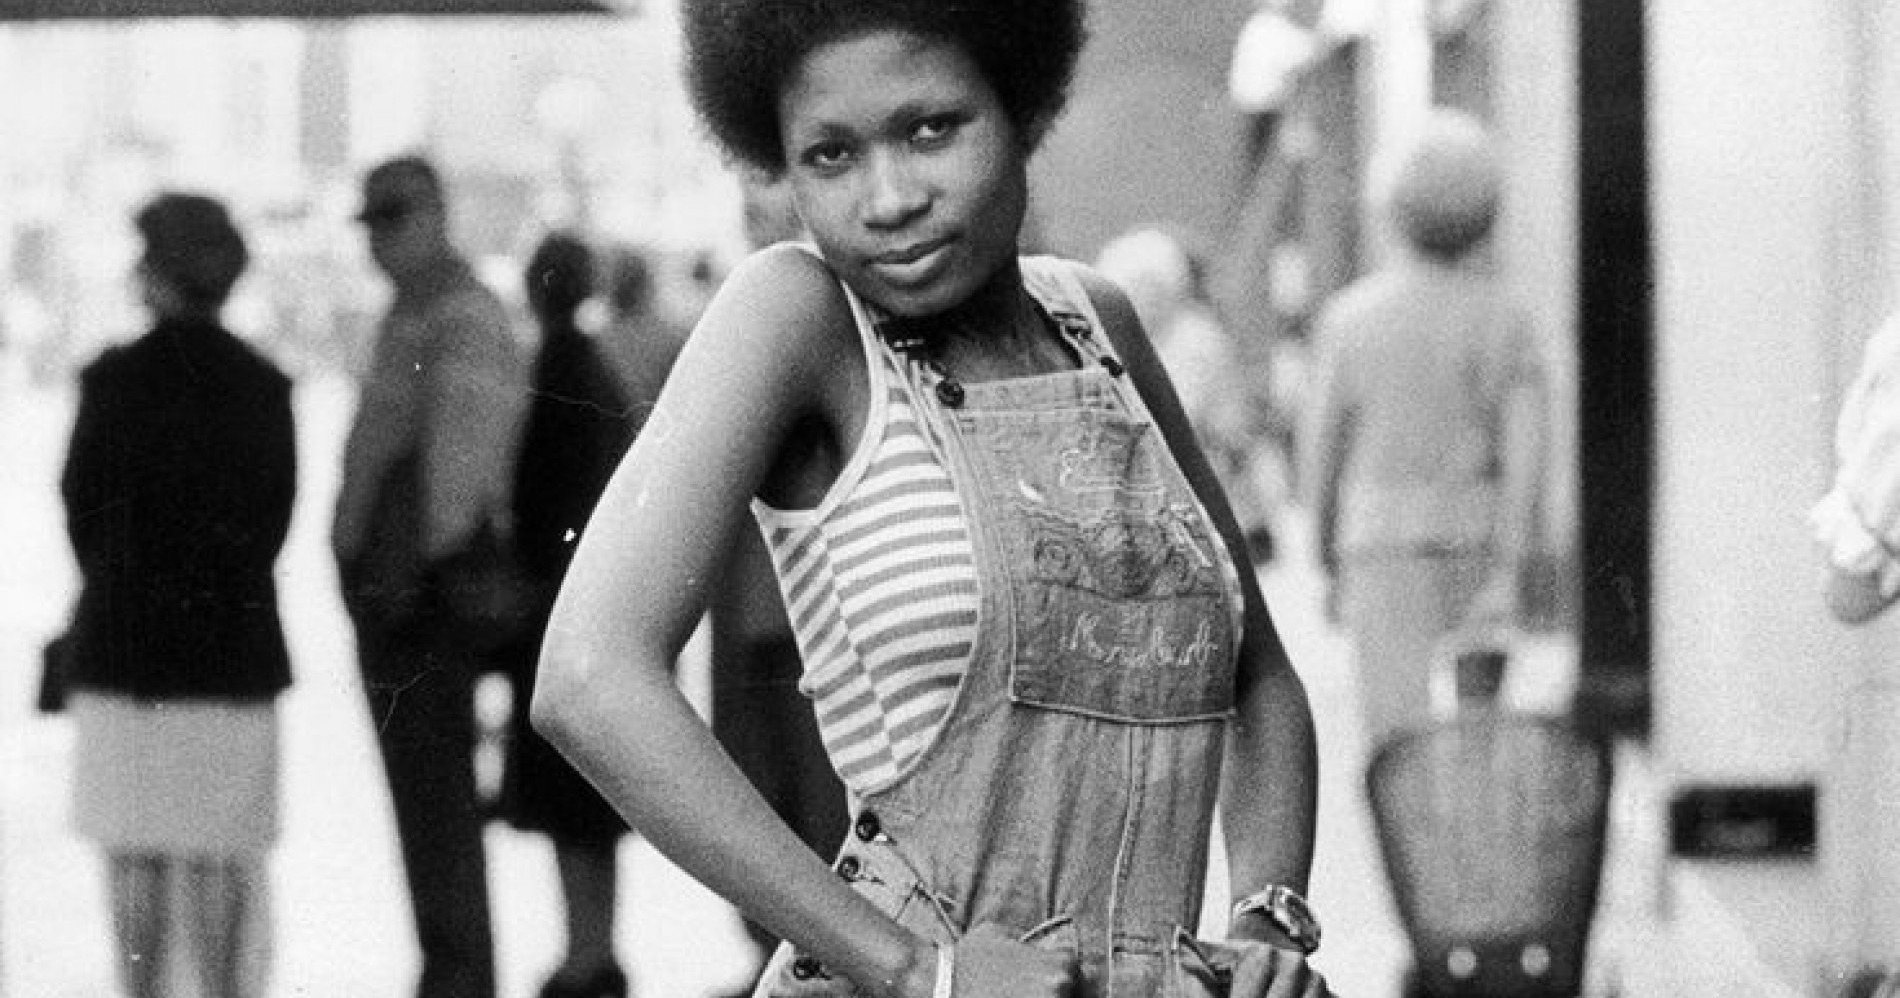 Aktivis perempuan berkulit hitam menggunakan pakaian berbahan dasar jeans. (Sumber gambar: Getty Images/Graham Wood)